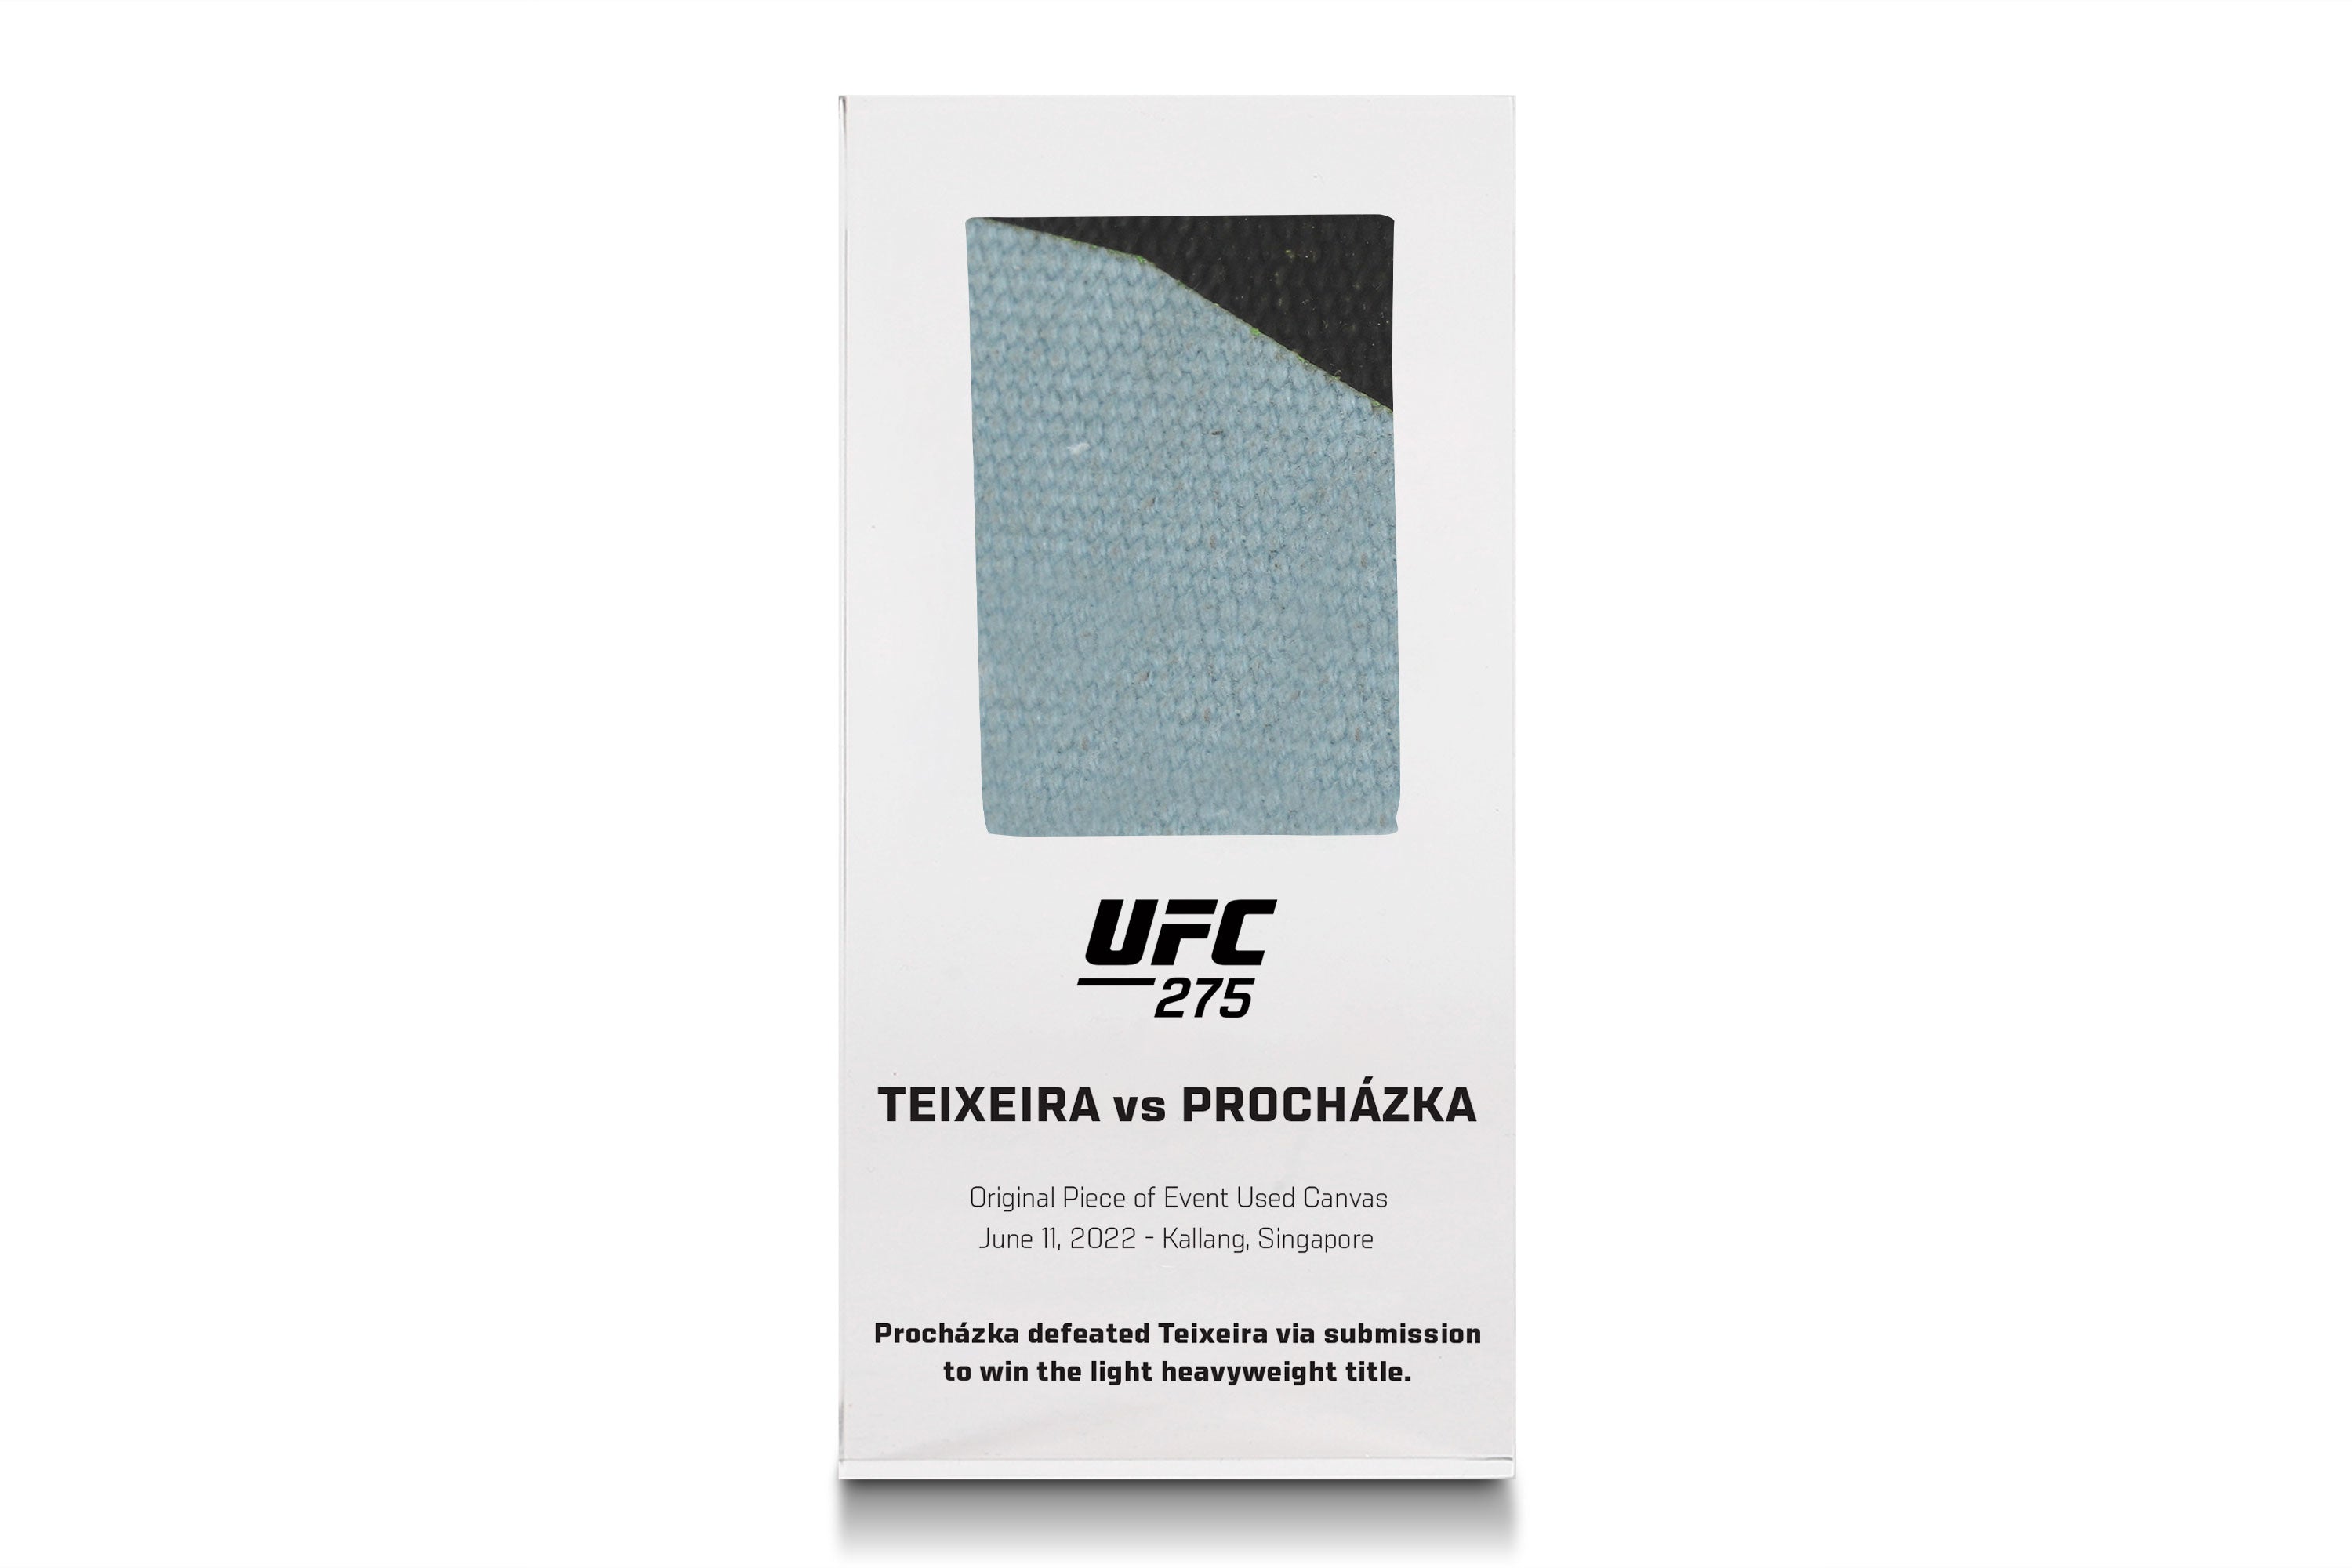 UFC 275: Teixeira vs Prochazka Canvas in Acrylic